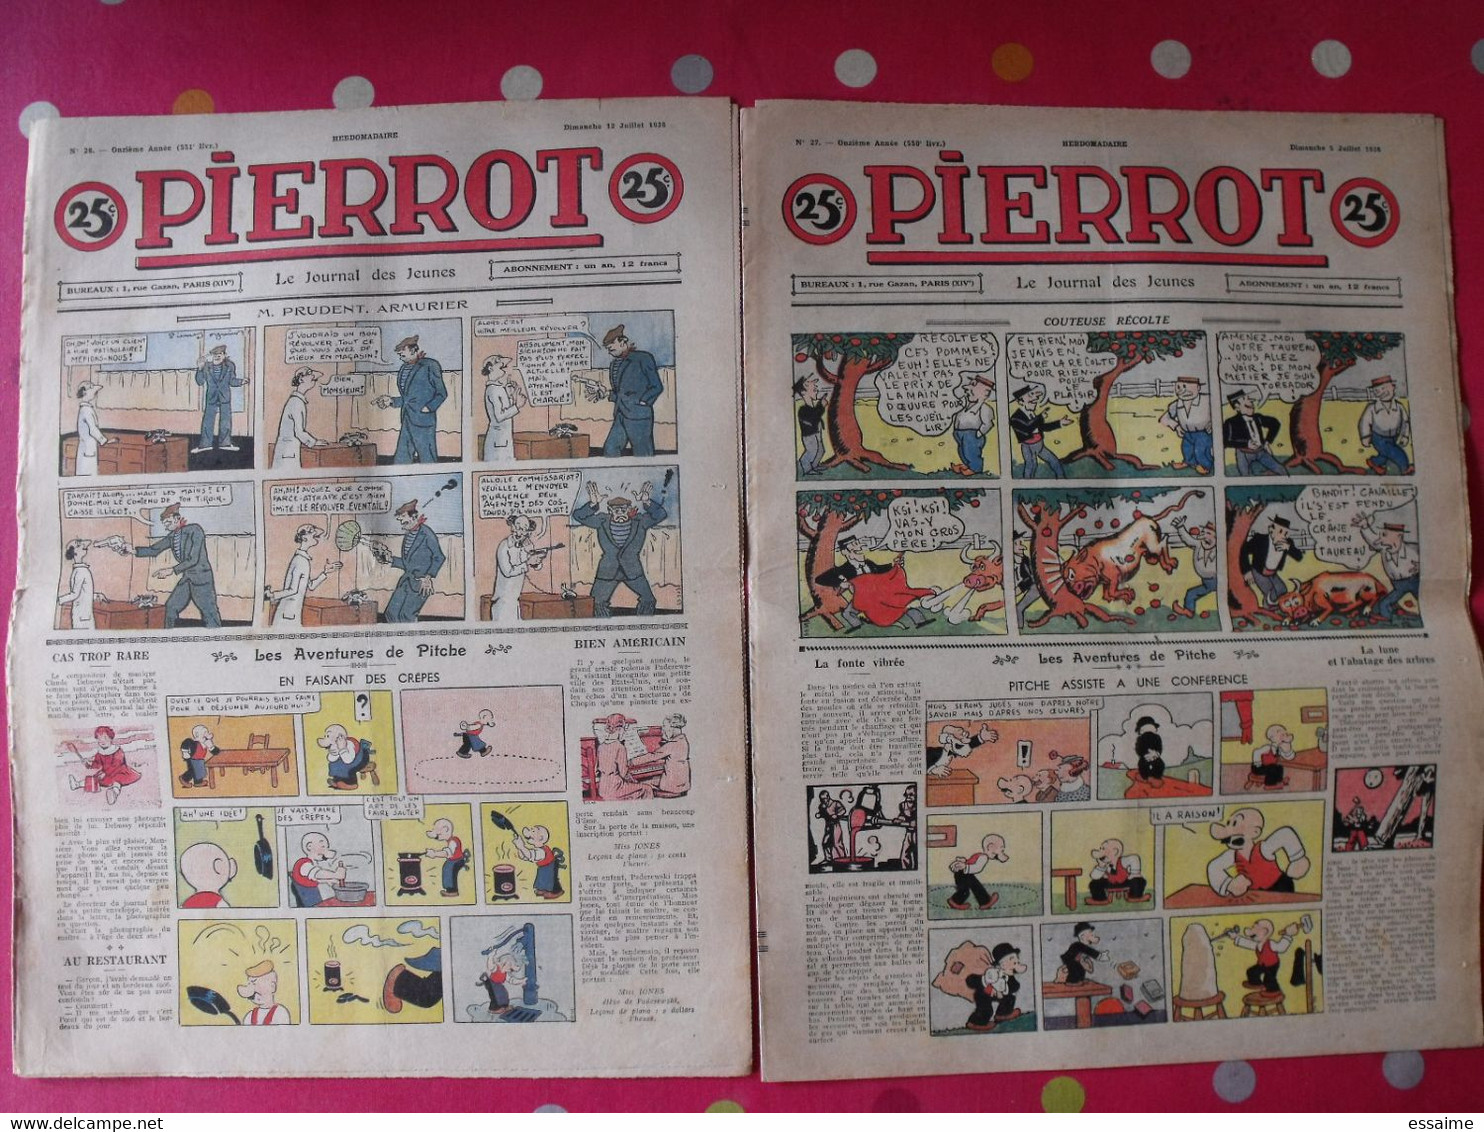 52 revues BD Pierrot de 1936. année complète. marijac jeanjean le rallic ferran cuvillier. A redécouvrir